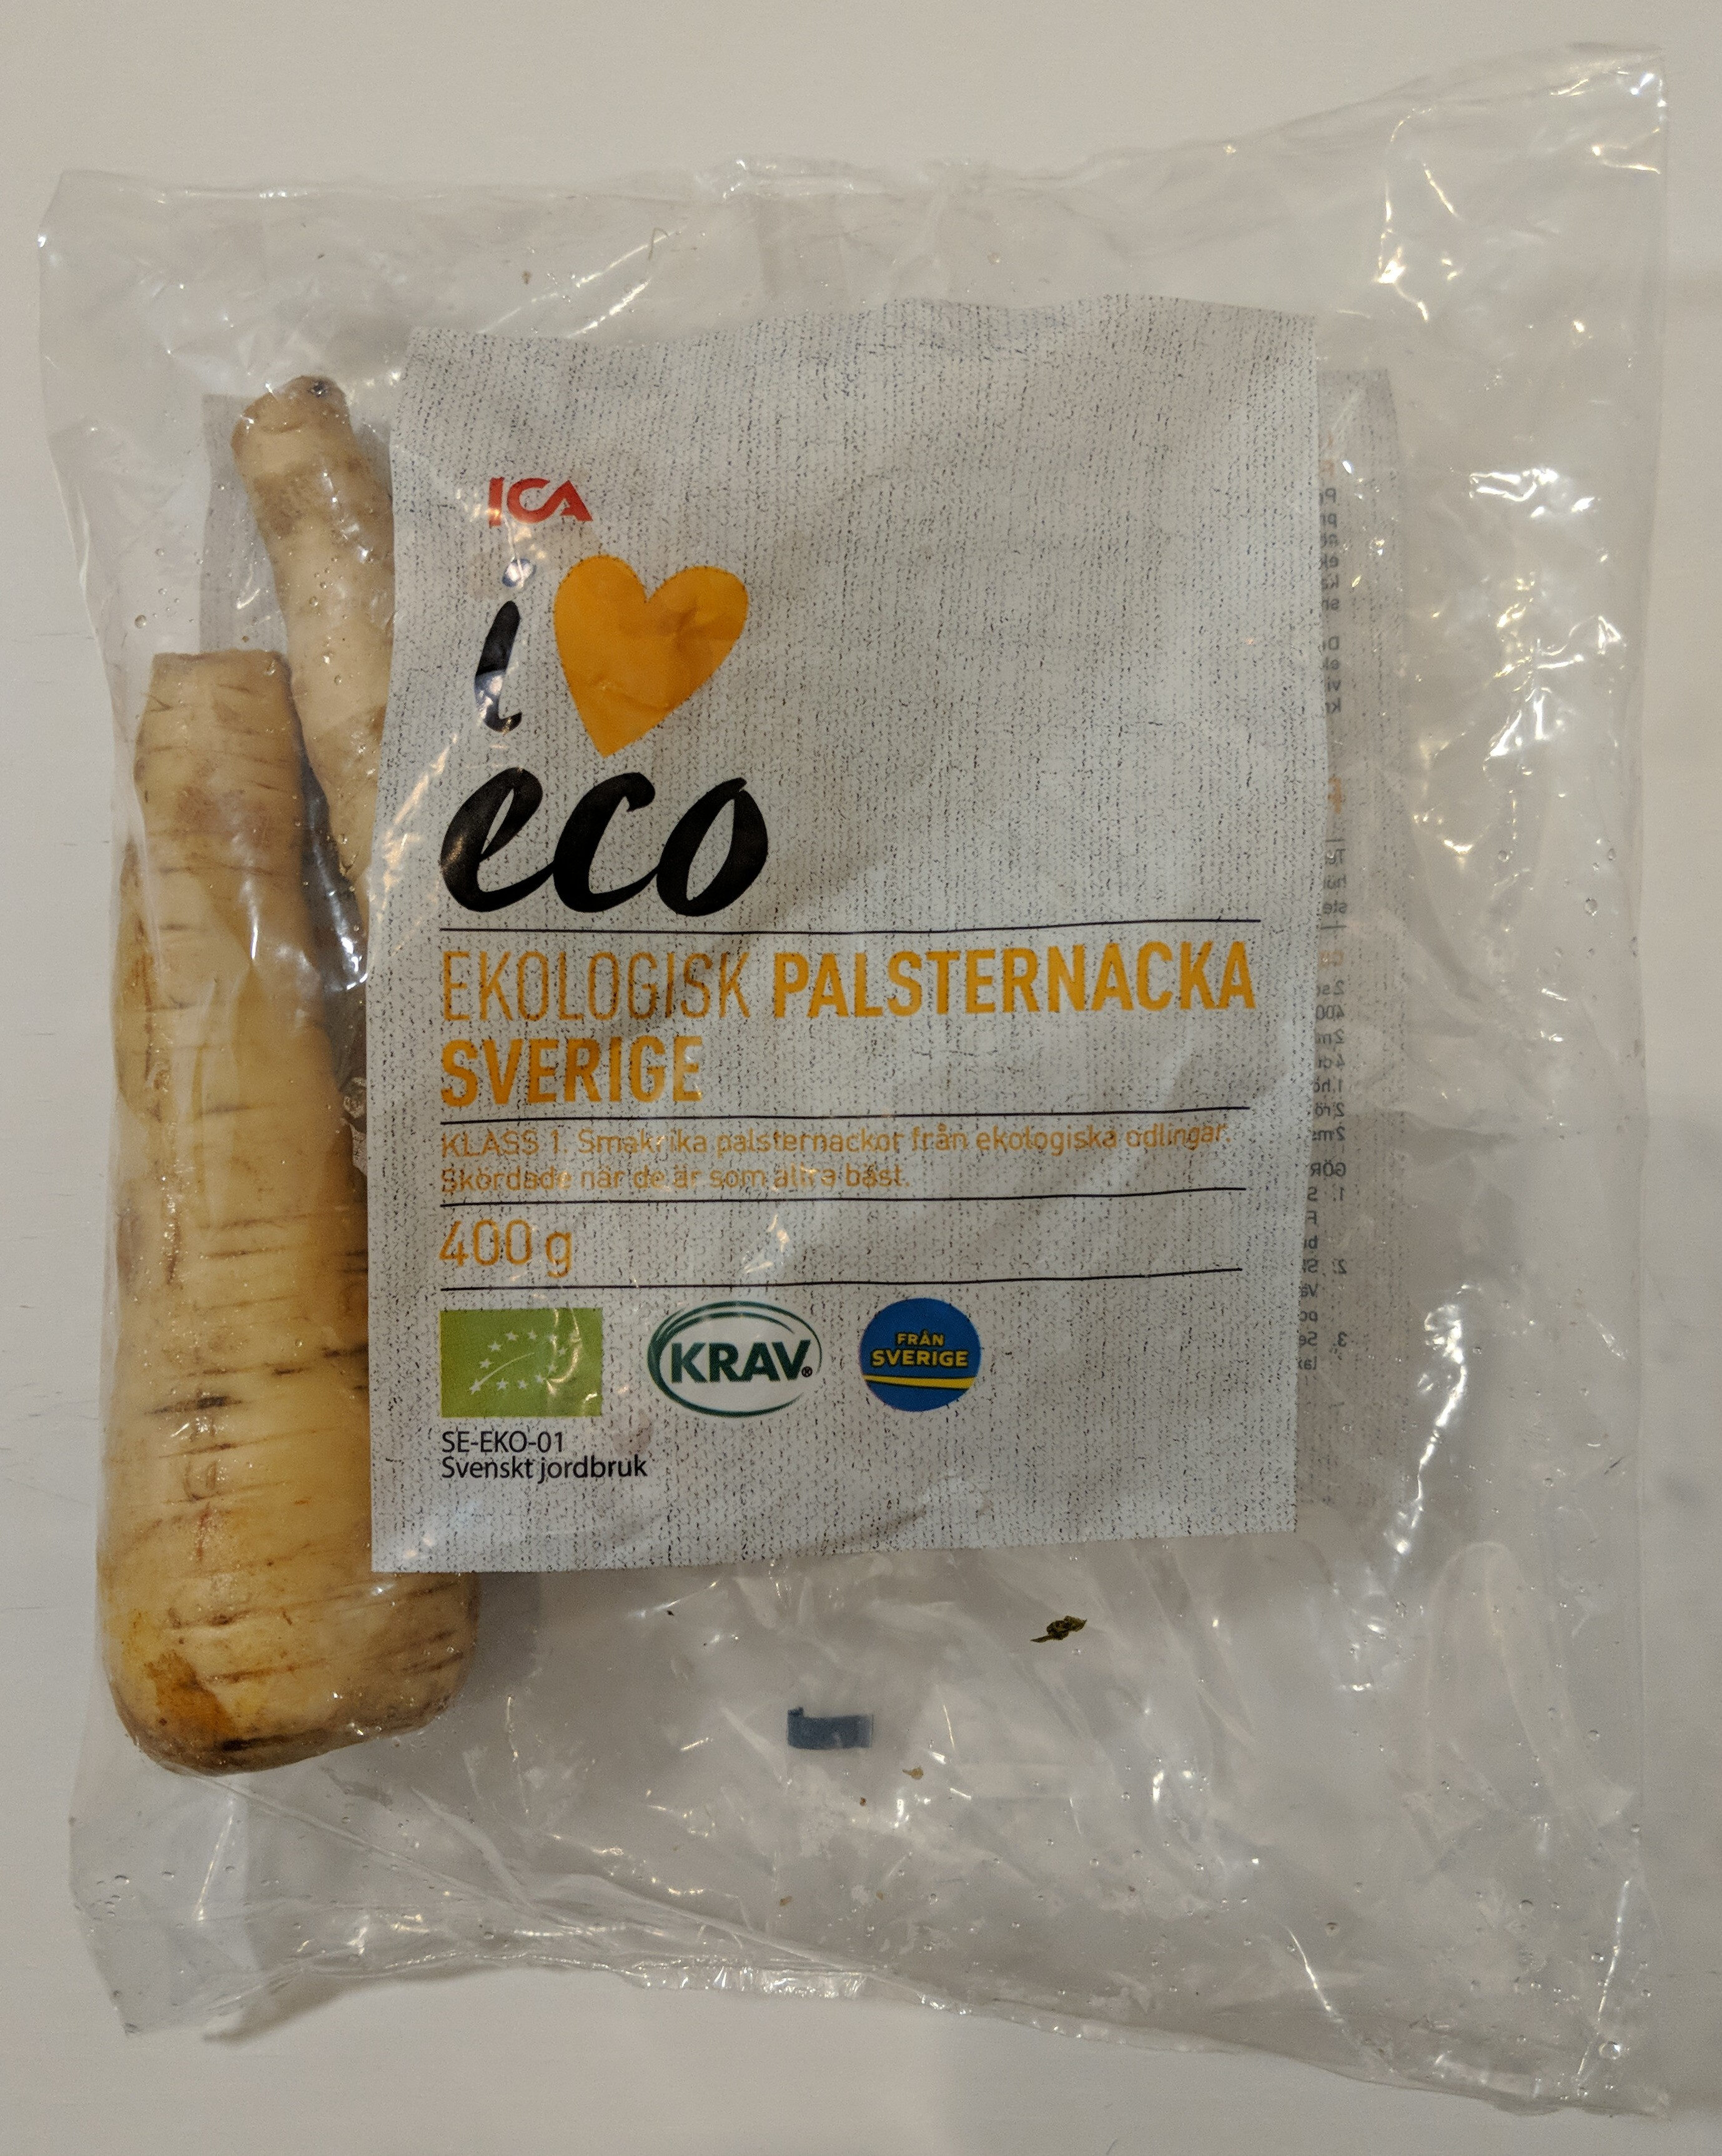 Ekologisk Palsternacka Sverige - Produkt - sv